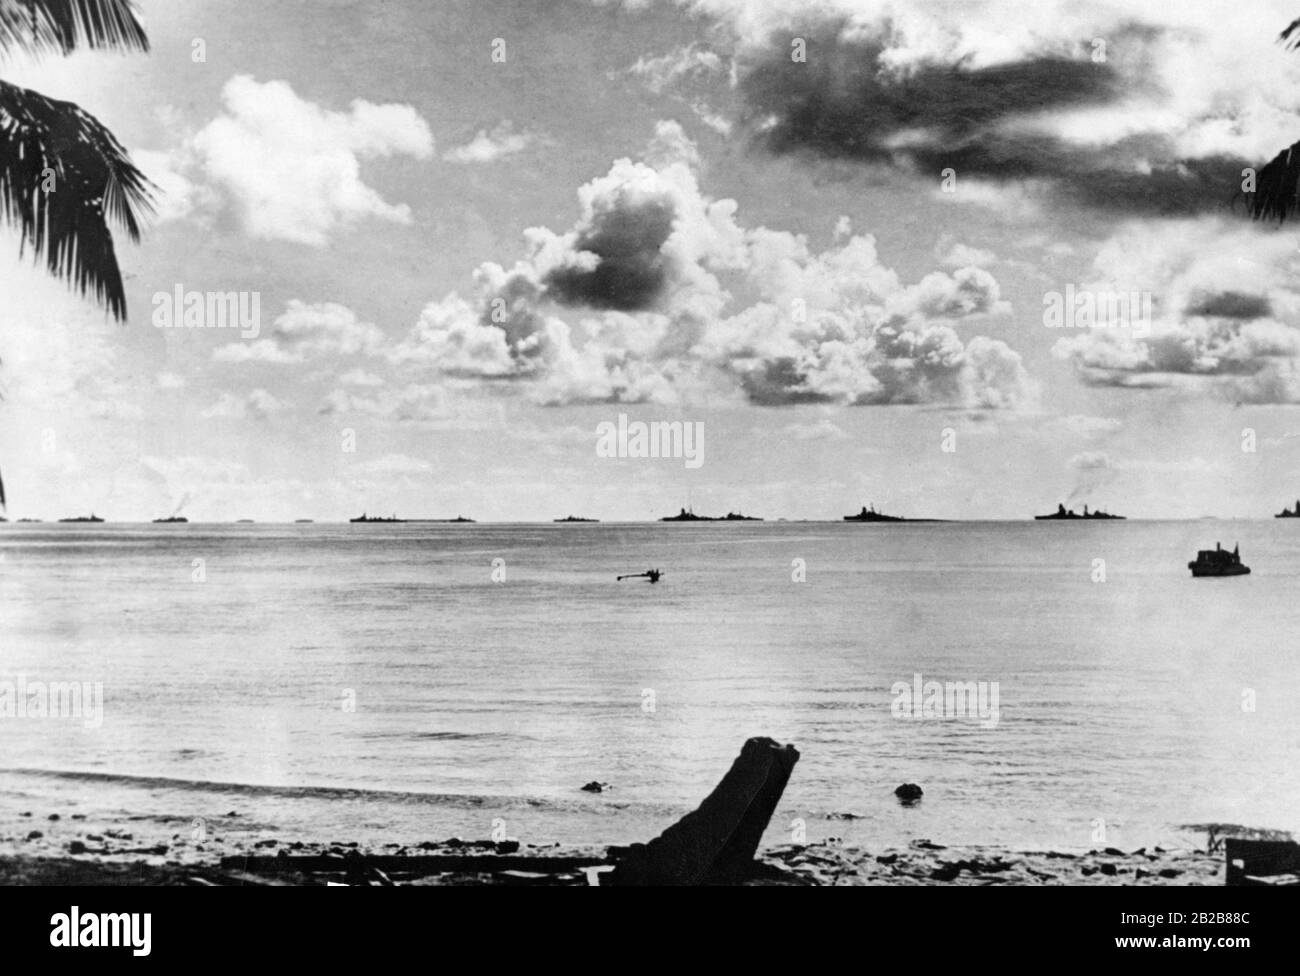 Blick von einer Insel in der Südsee über das Meer. Am Horizont stehen mehrere Schiffe der Kaiserlich japanischen Marine. Dieser Teil der Südsee stand im Rahmen des japanischen Südpazifischen Mandats unter der Kontrolle Japans. (Undatiertes Foto, ca. 1930er Jahre) Stockfoto